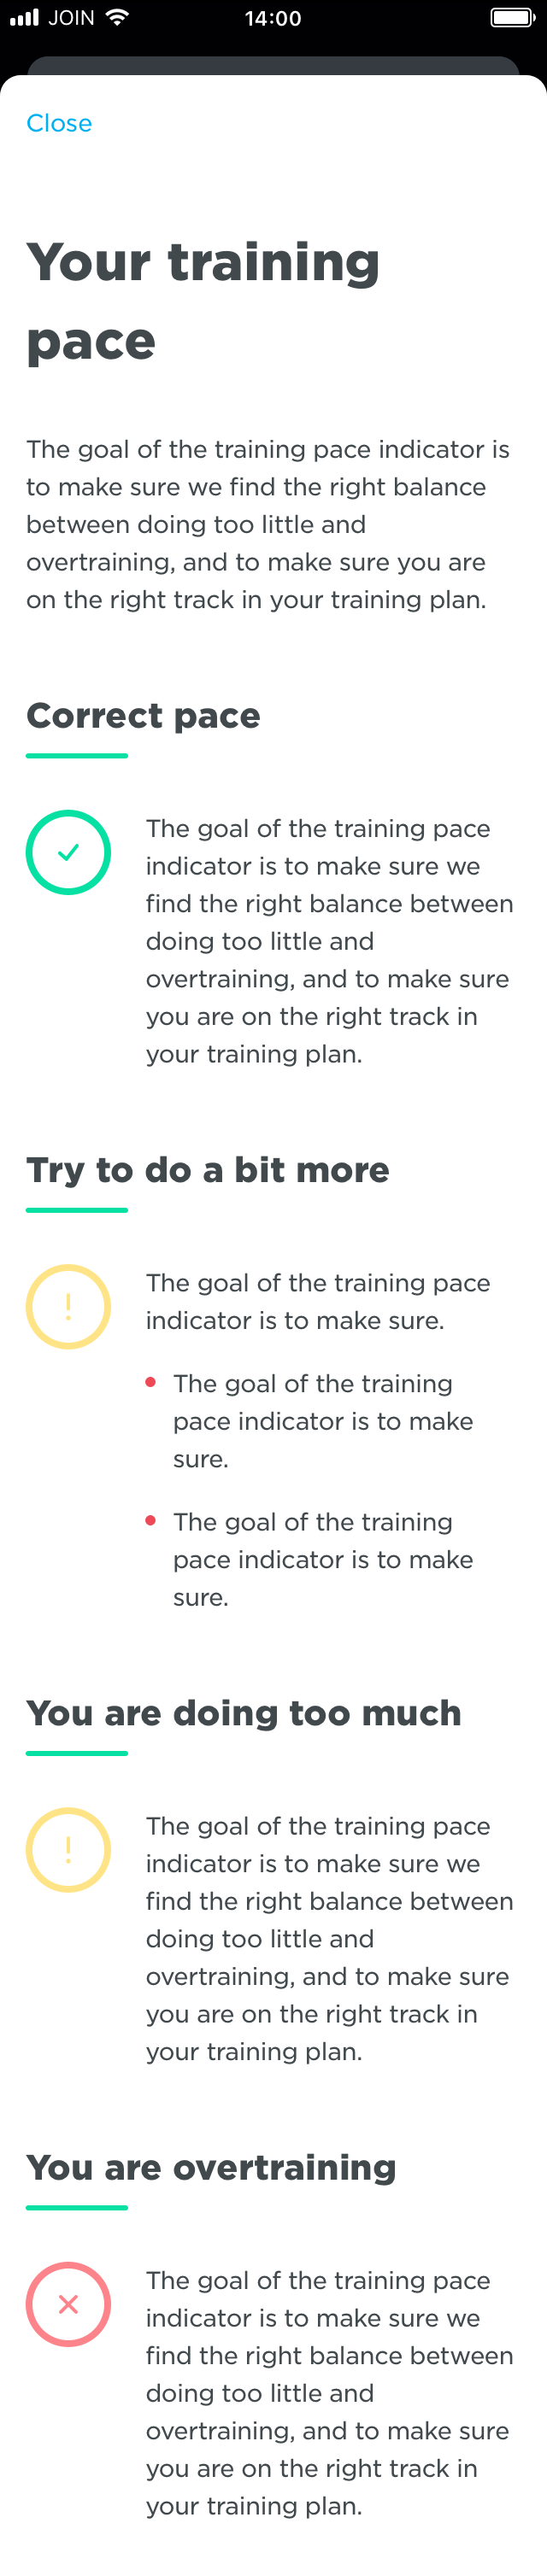 Training_Plan_-_Week_type_-_Info.png